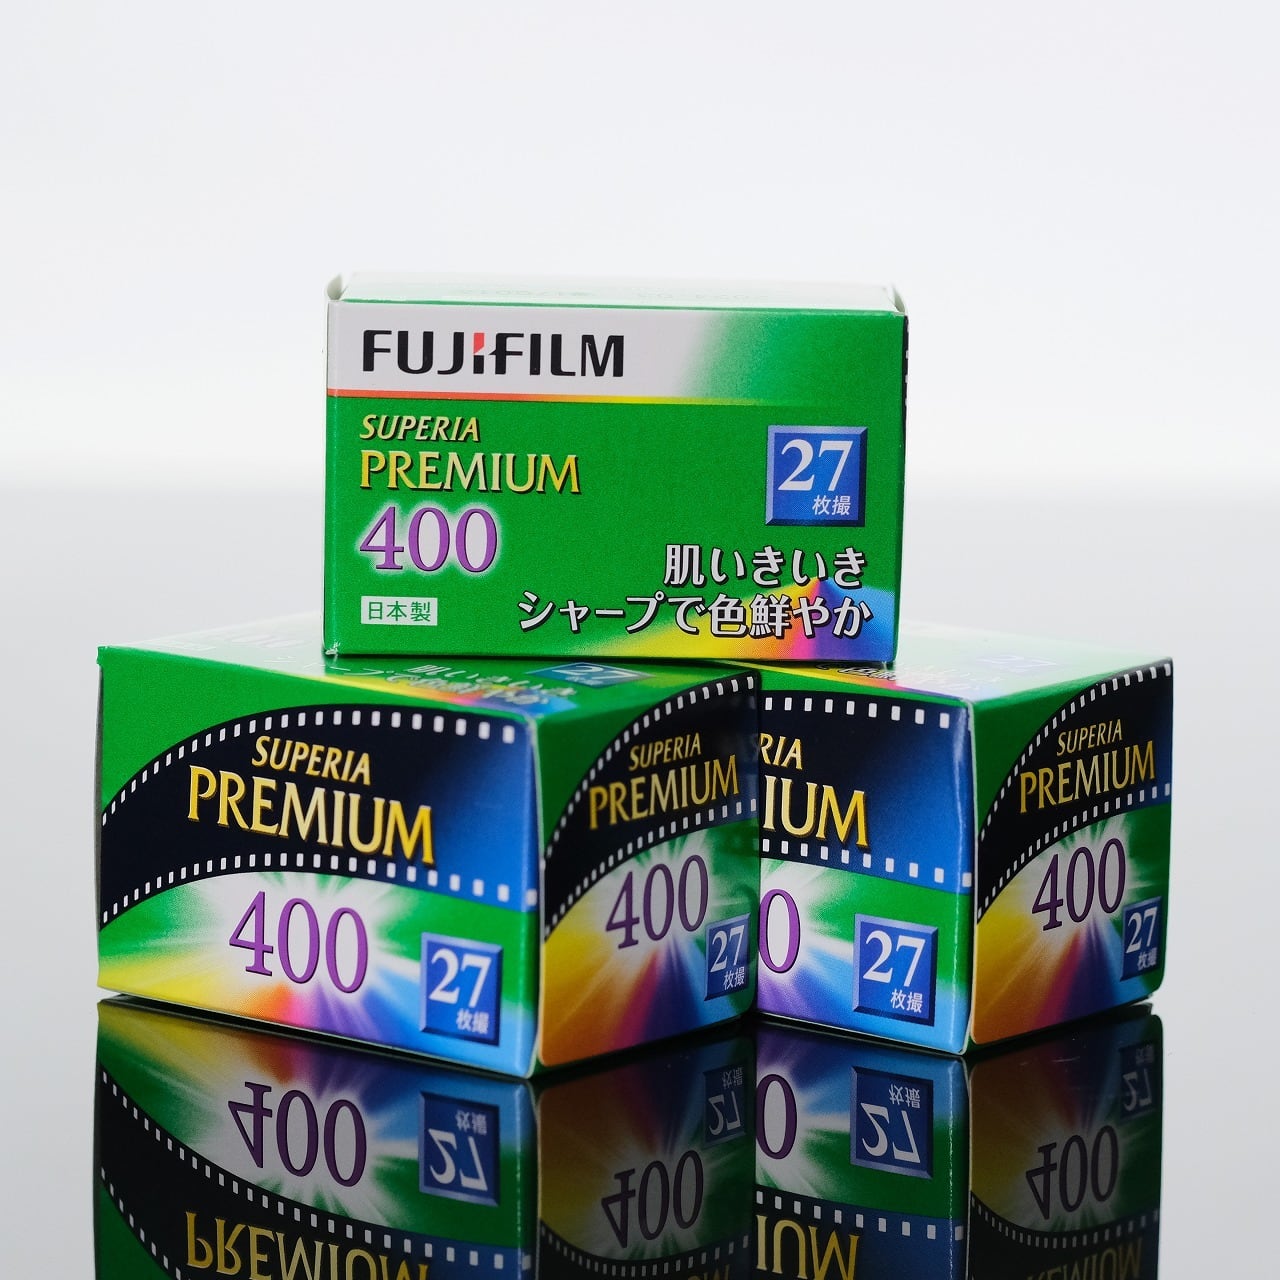 FUJIFILM SUPERIA PREMIUM 400 27枚撮【35mm カラーネガフィルム・富士フィルム】 | まるやまカメラ powered  by BASE